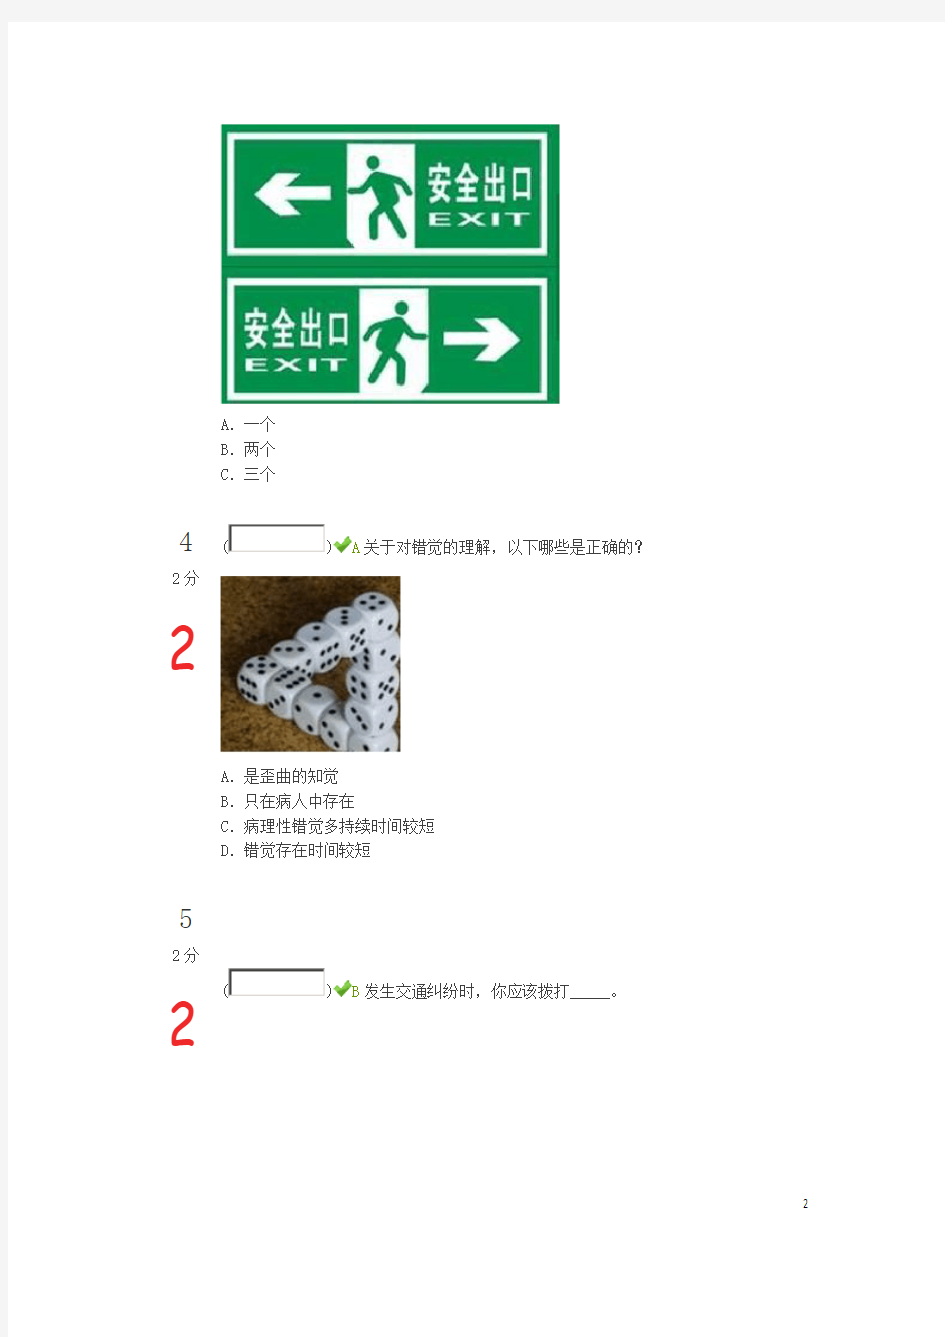 2014年福建省中小学生安全知识网络竞赛家长题 (2014.9.24)